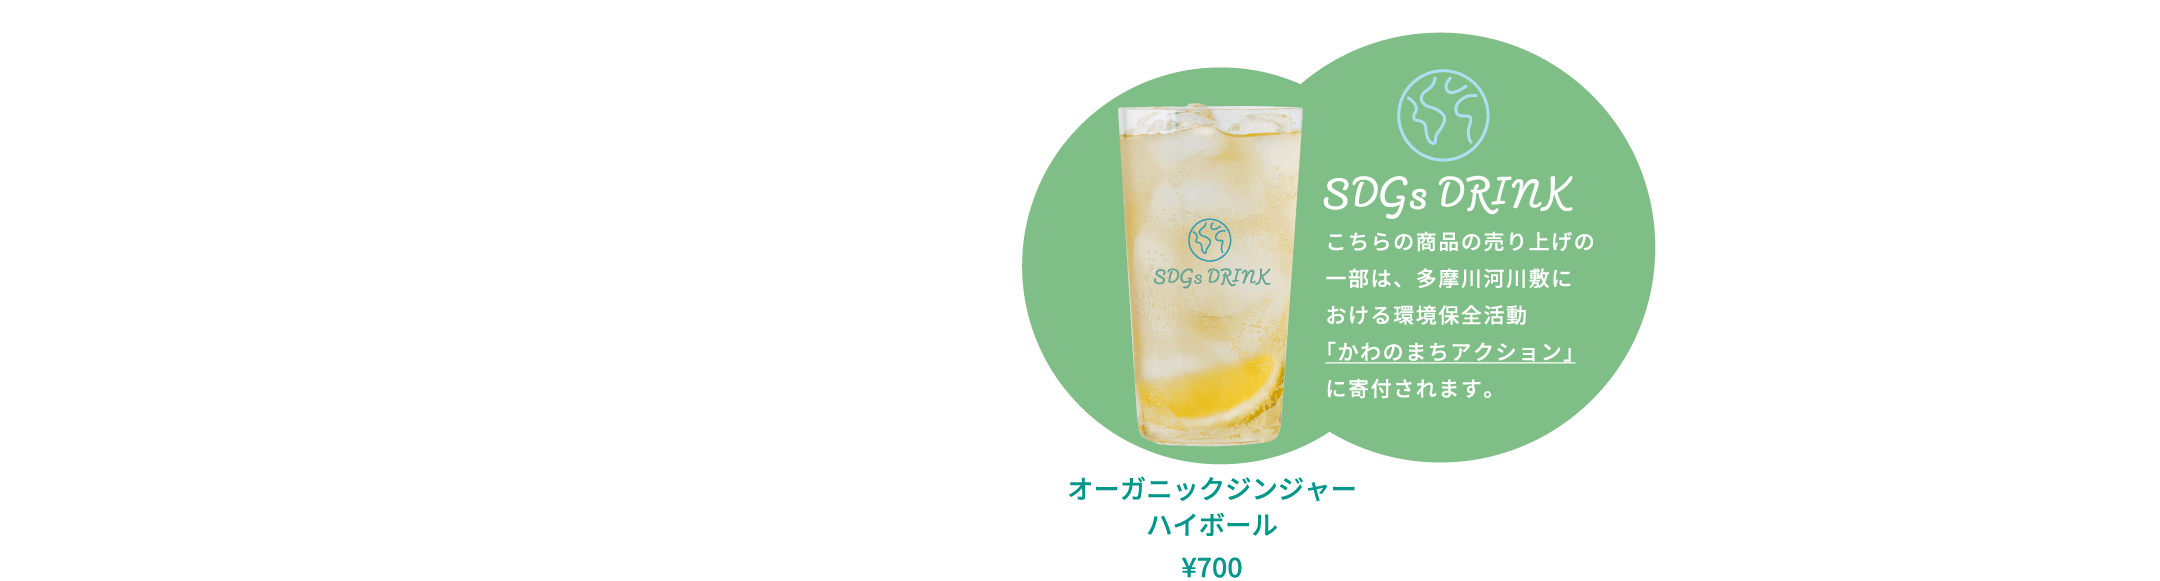 オーガニックジンジャーハイボール ¥700 SDGs DRINK こちらの商品の売り上げの一部は、多摩川河川敷における環境保全活動「かわのまちアクション」に寄付されます。